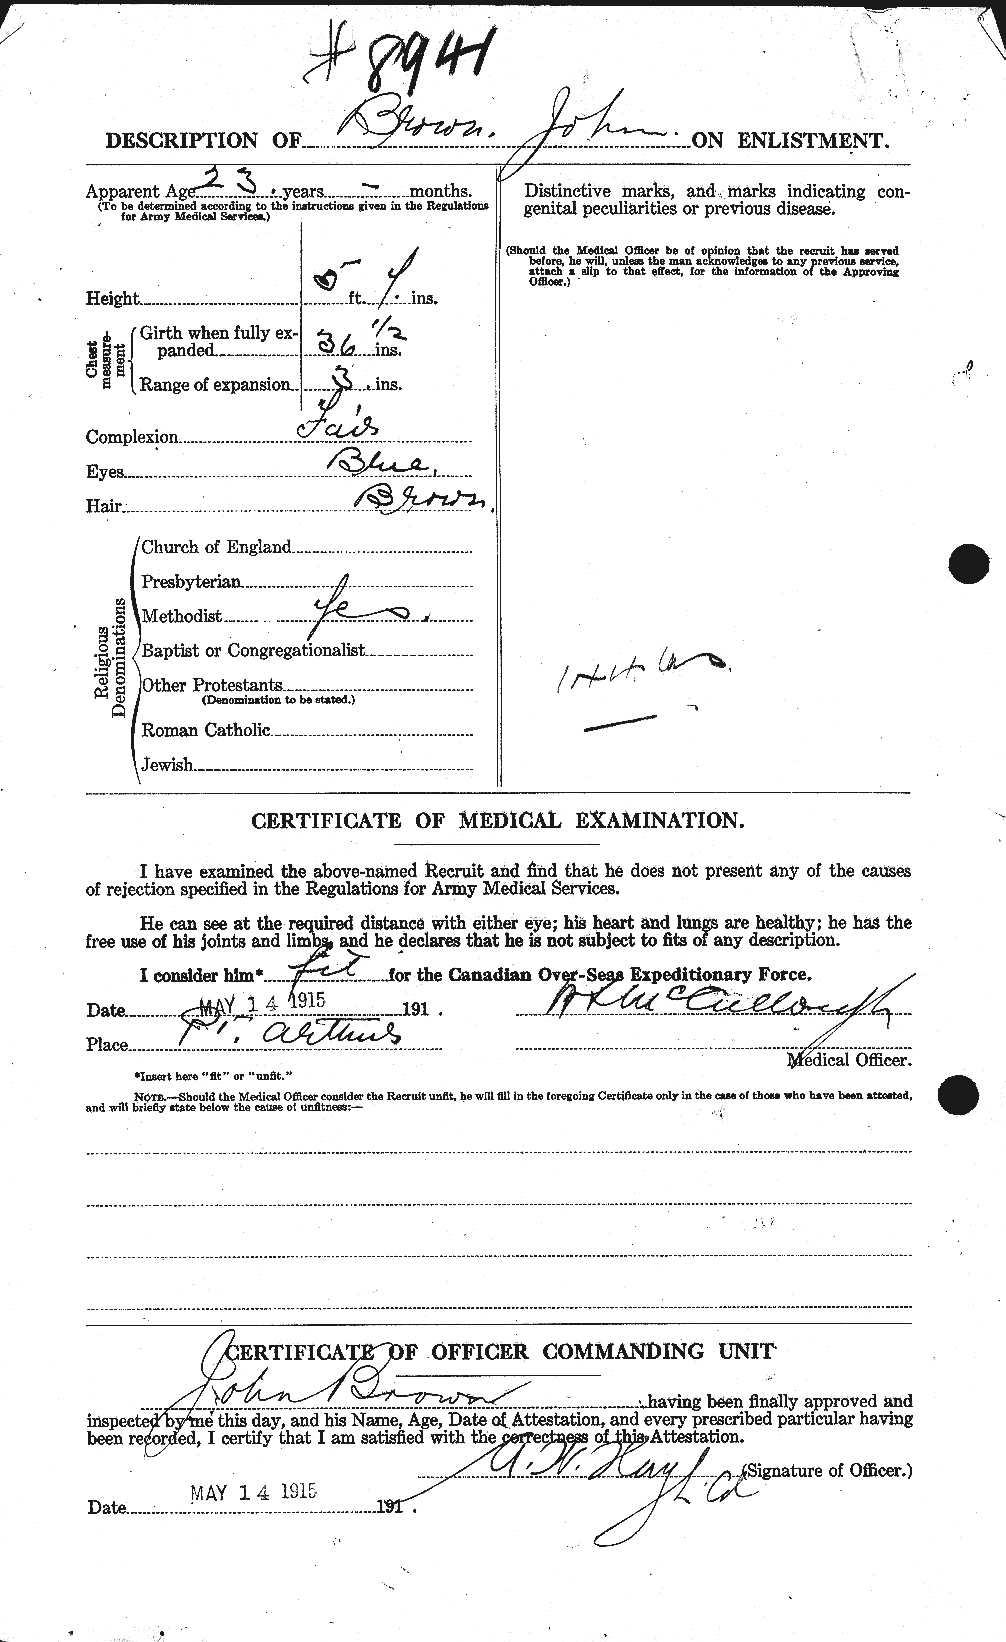 Dossiers du Personnel de la Première Guerre mondiale - CEC 264527b